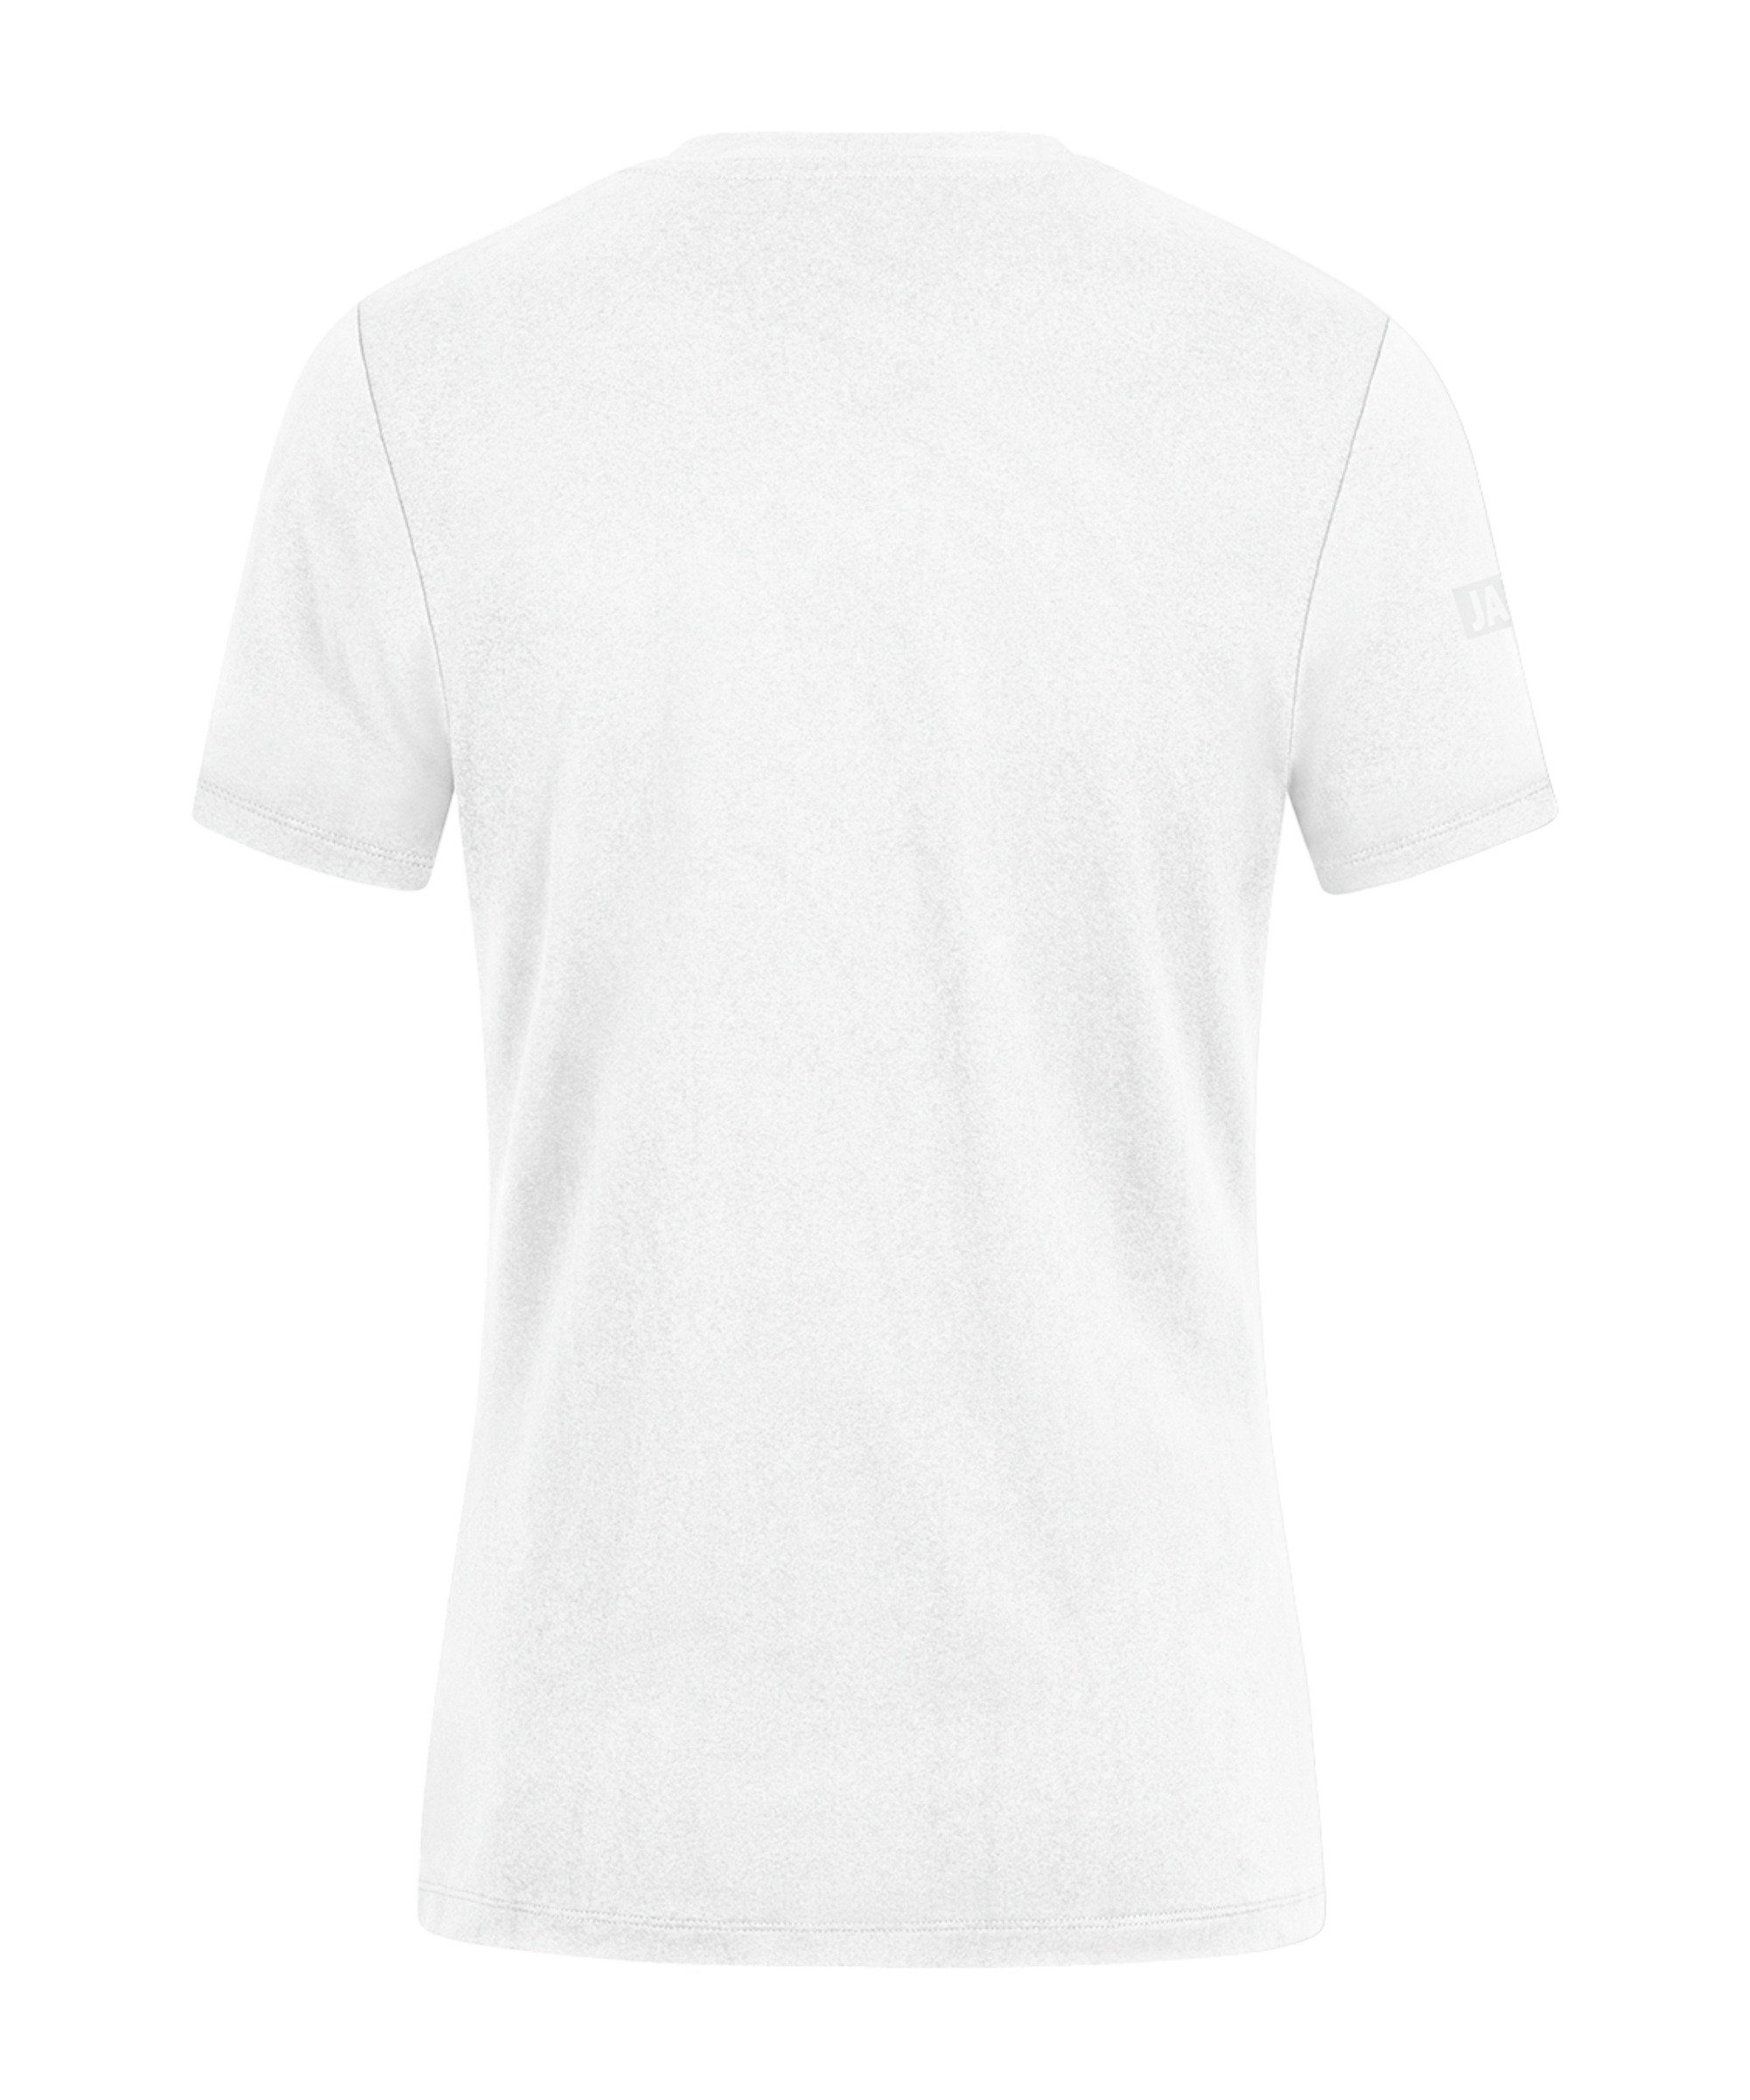 Jako Damen weiss default Pro Casual T-Shirt T-Shirt